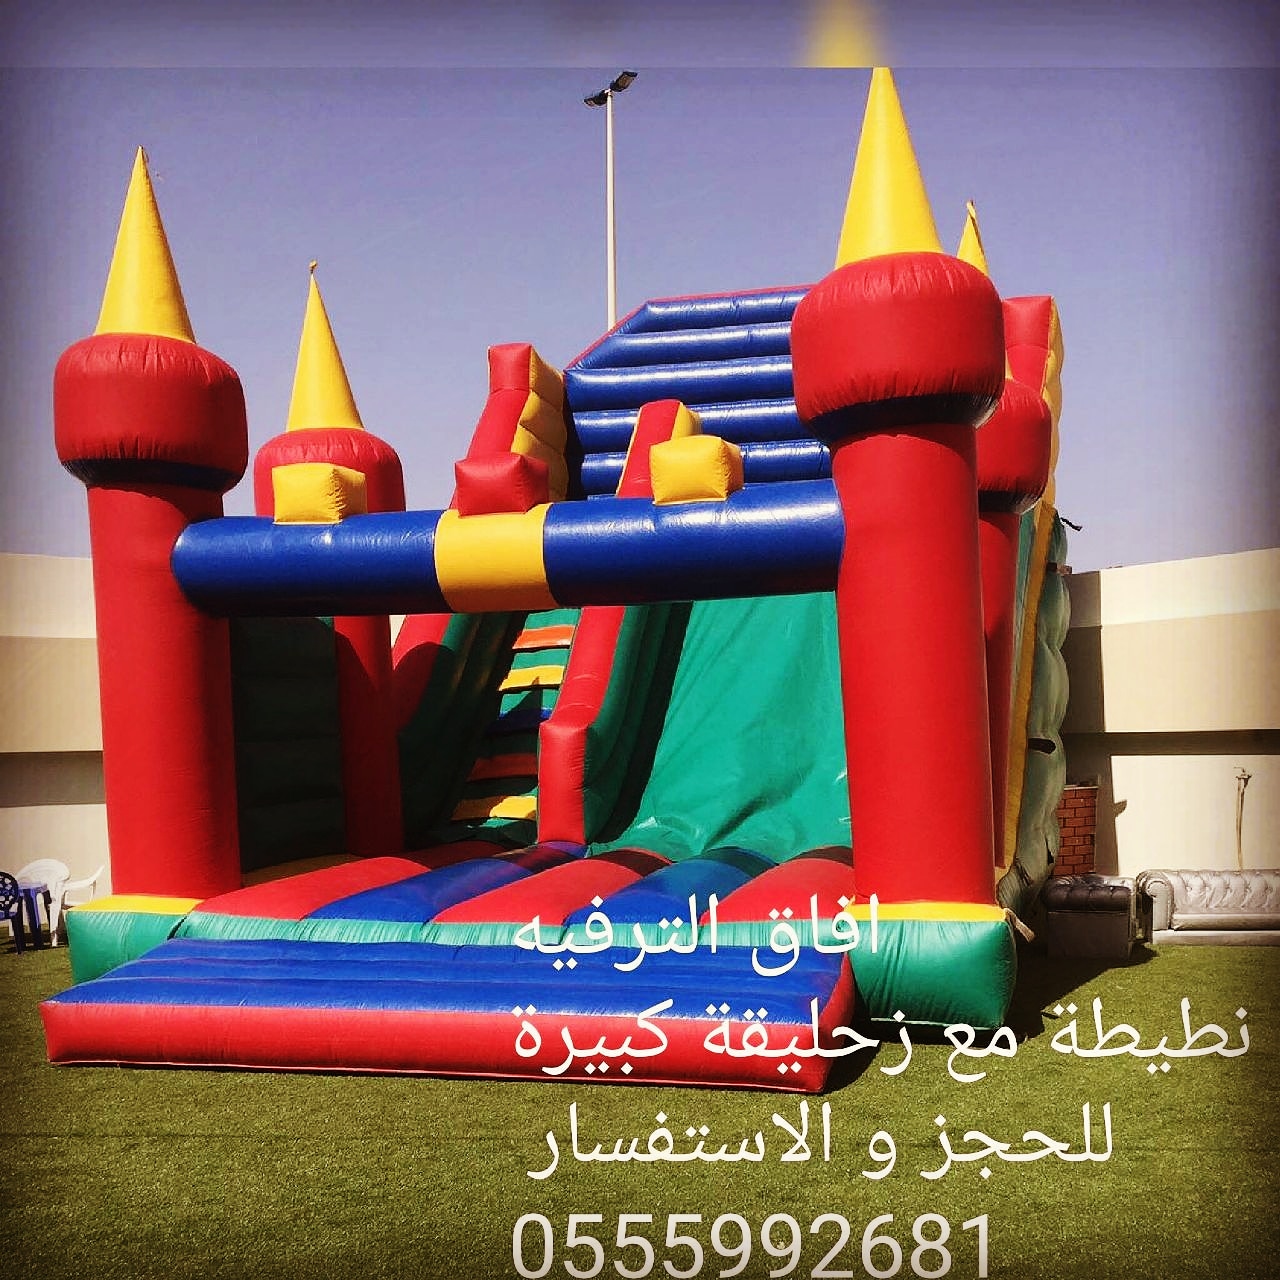 العاب-اطفال
                        ملعب صابوني للايجار بجدة 0555992681...